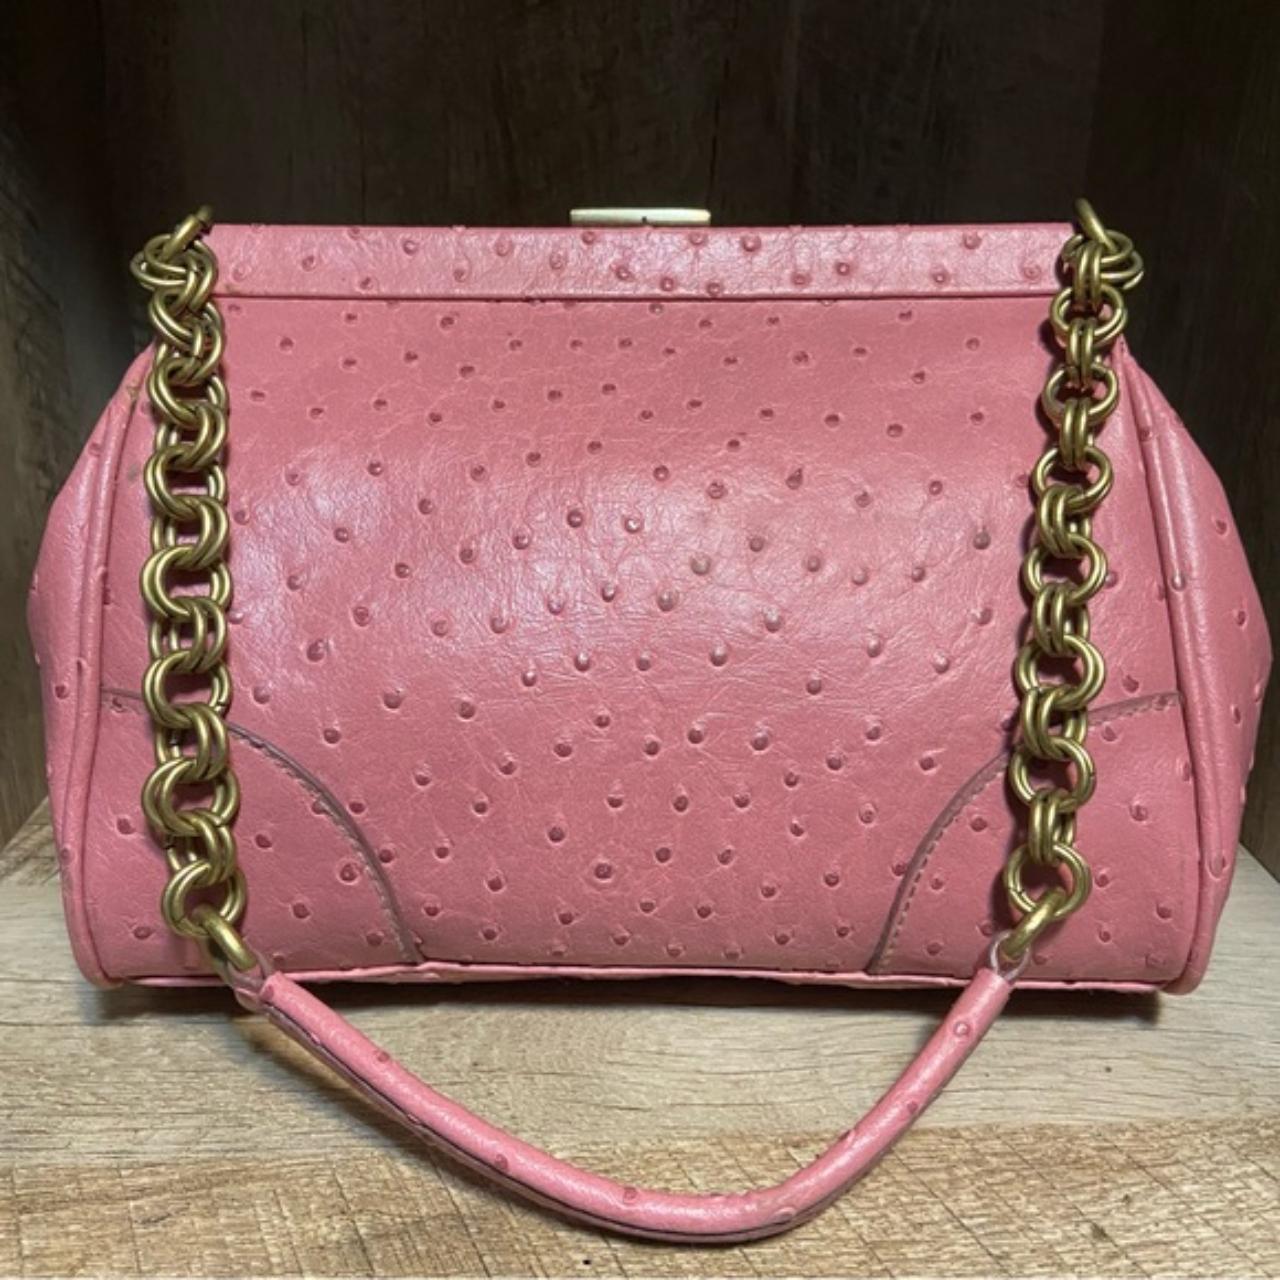 Vintage Pink Leather Shoulder Bag Purse Chain... - Depop